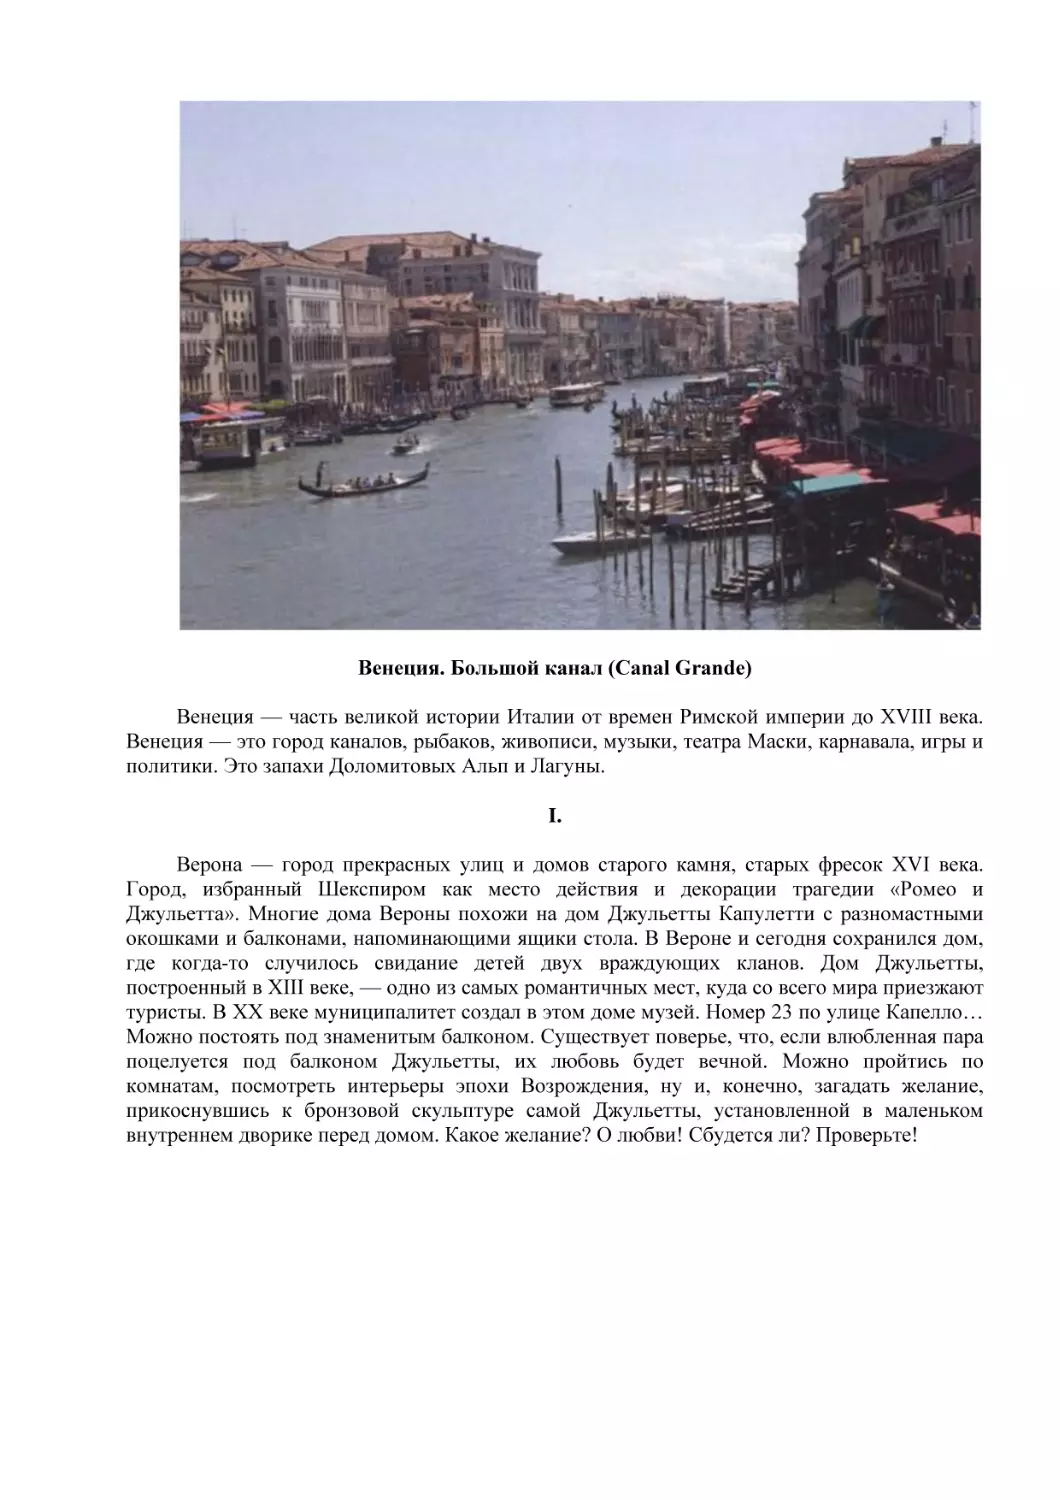 Венеция. Большой канал (Canal Grande)
I.